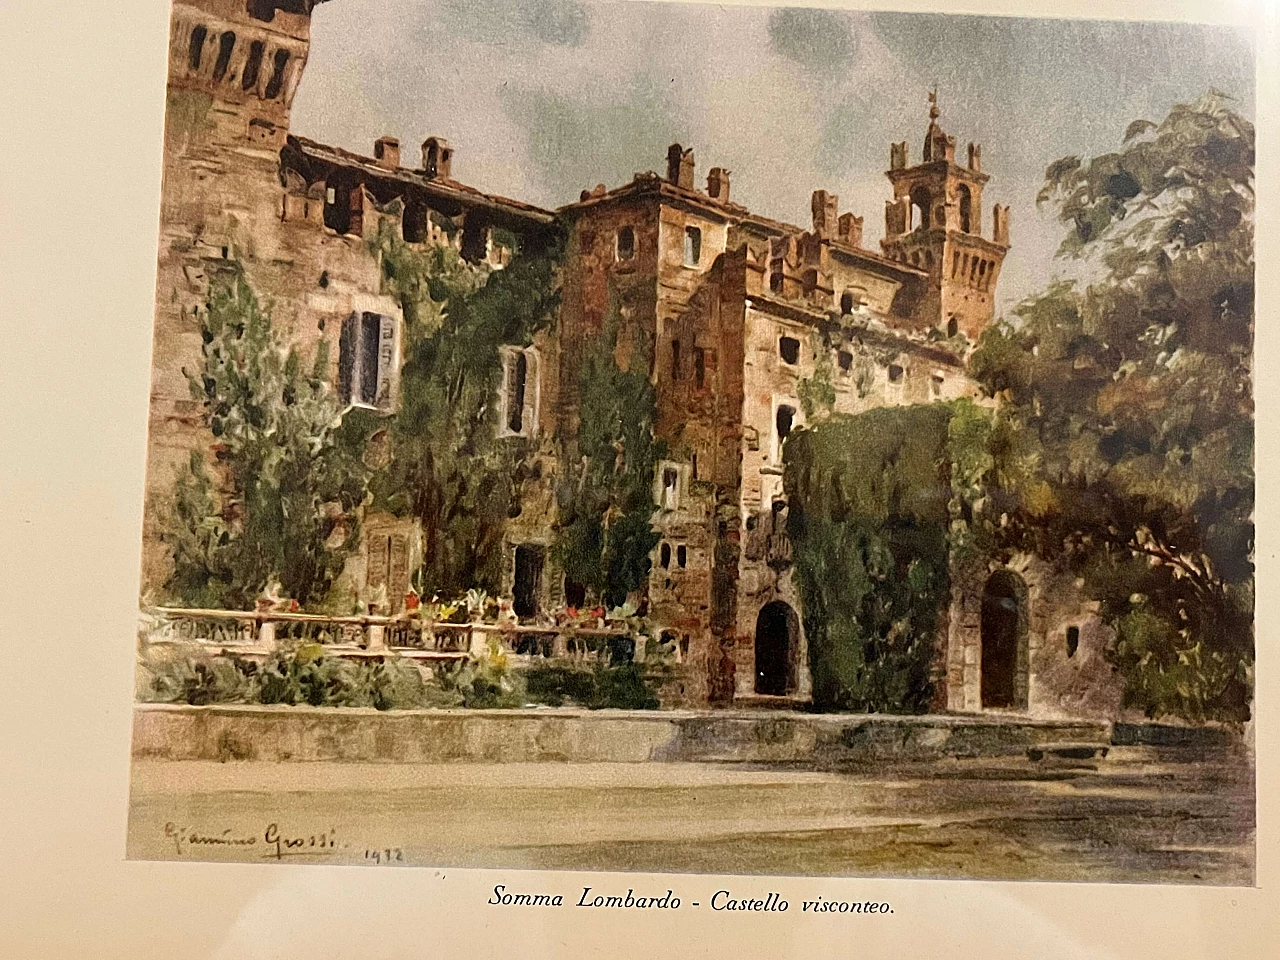 Giannino Grossi, Castello visconteo di Somma Lombardo, stampa a colori, 1932 3